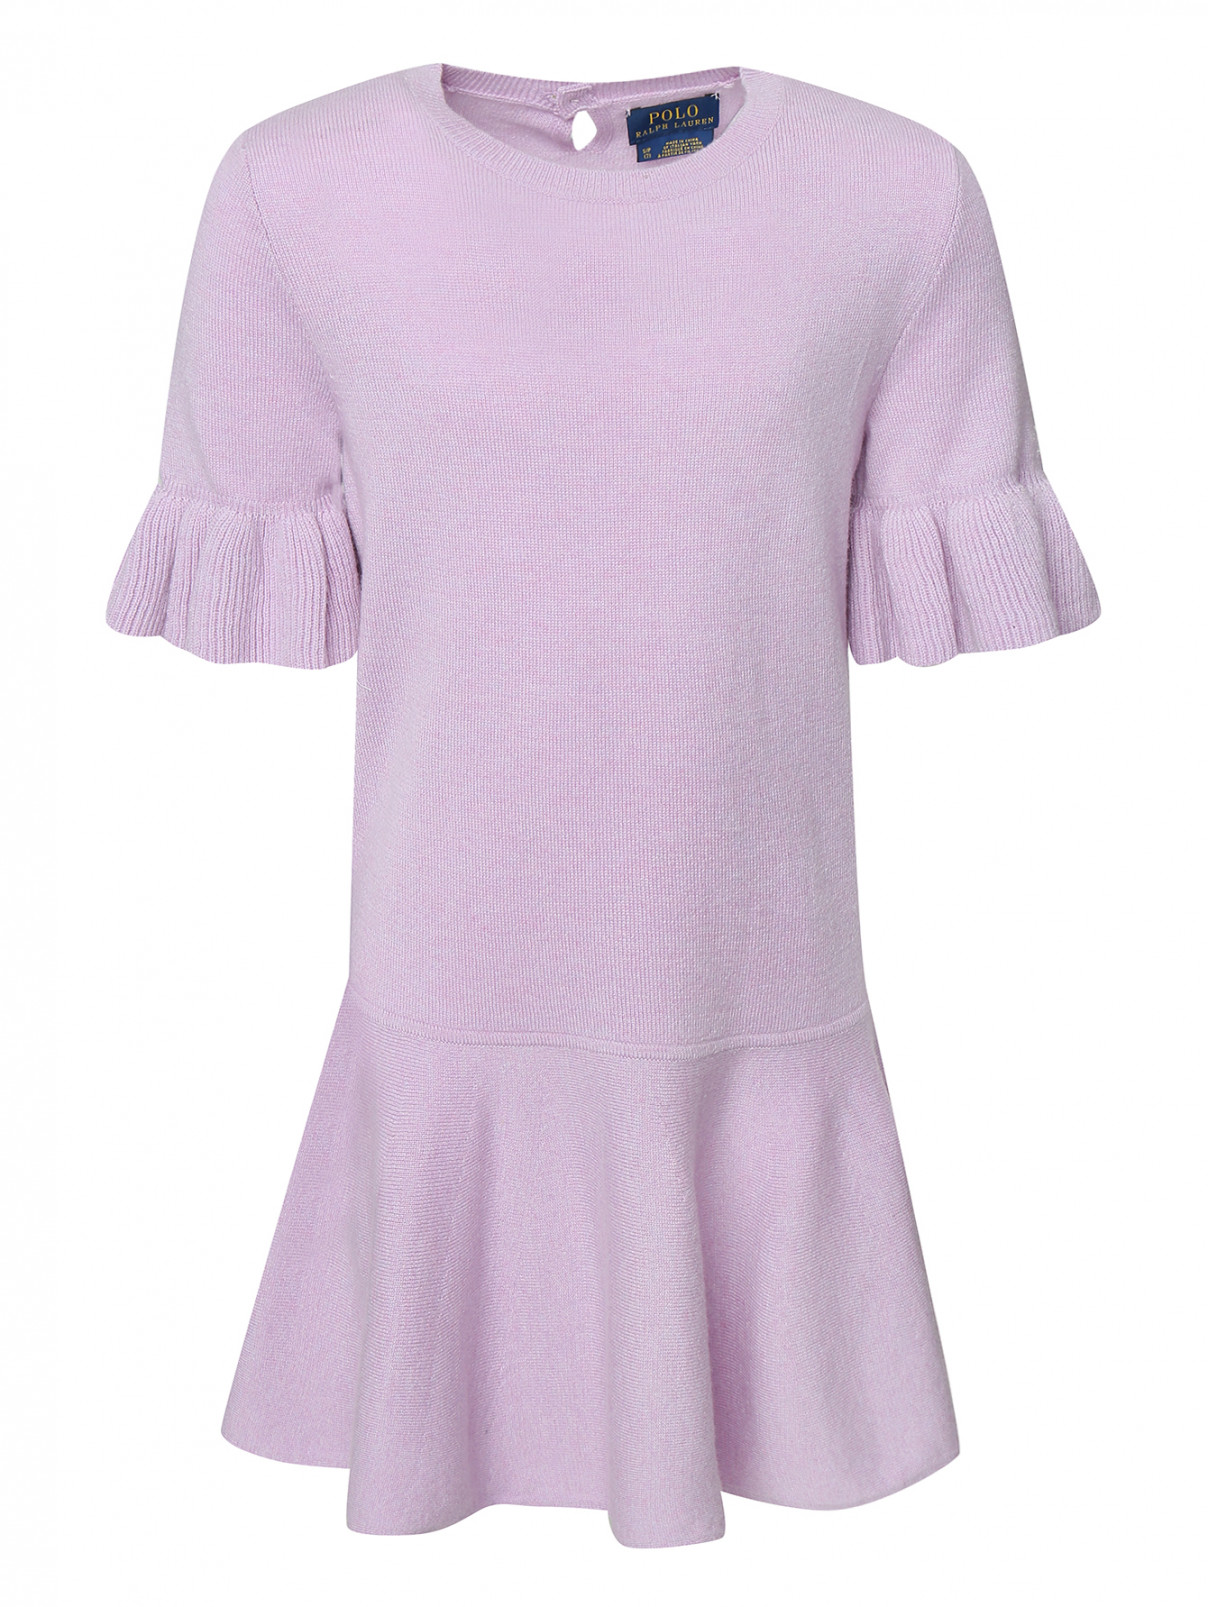 Платье из шерсти с воланом Ralph Lauren  –  Общий вид  – Цвет:  Фиолетовый